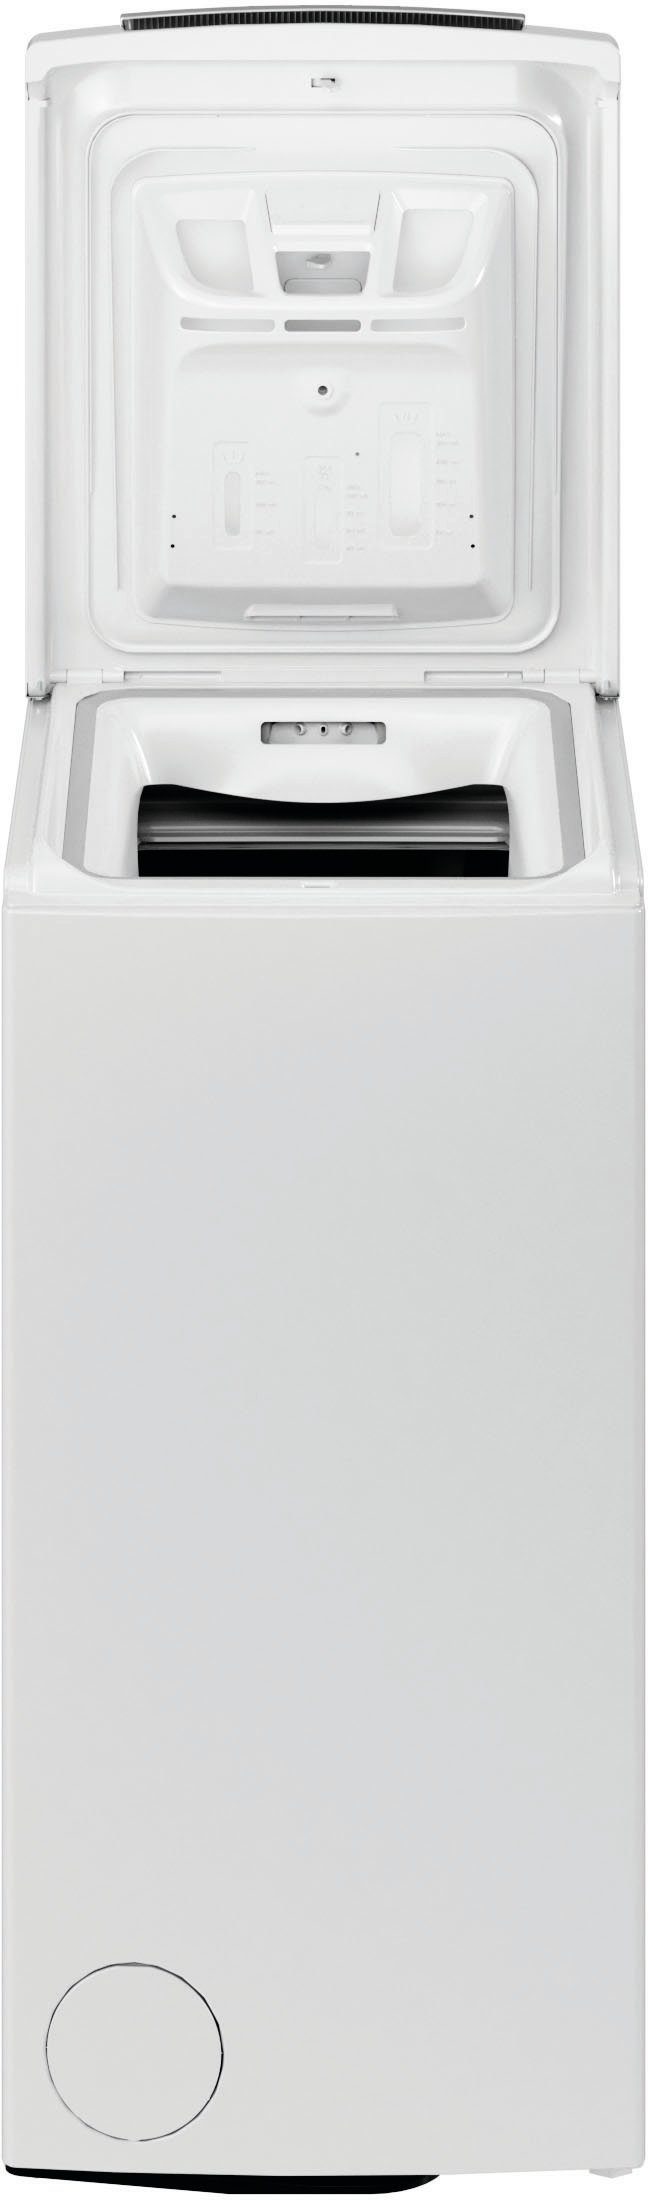 BAUKNECHT Waschmaschine Toplader WMT 6513 1200 U/min, 6,5 4 CC, kg, Herstellergarantie Jahre